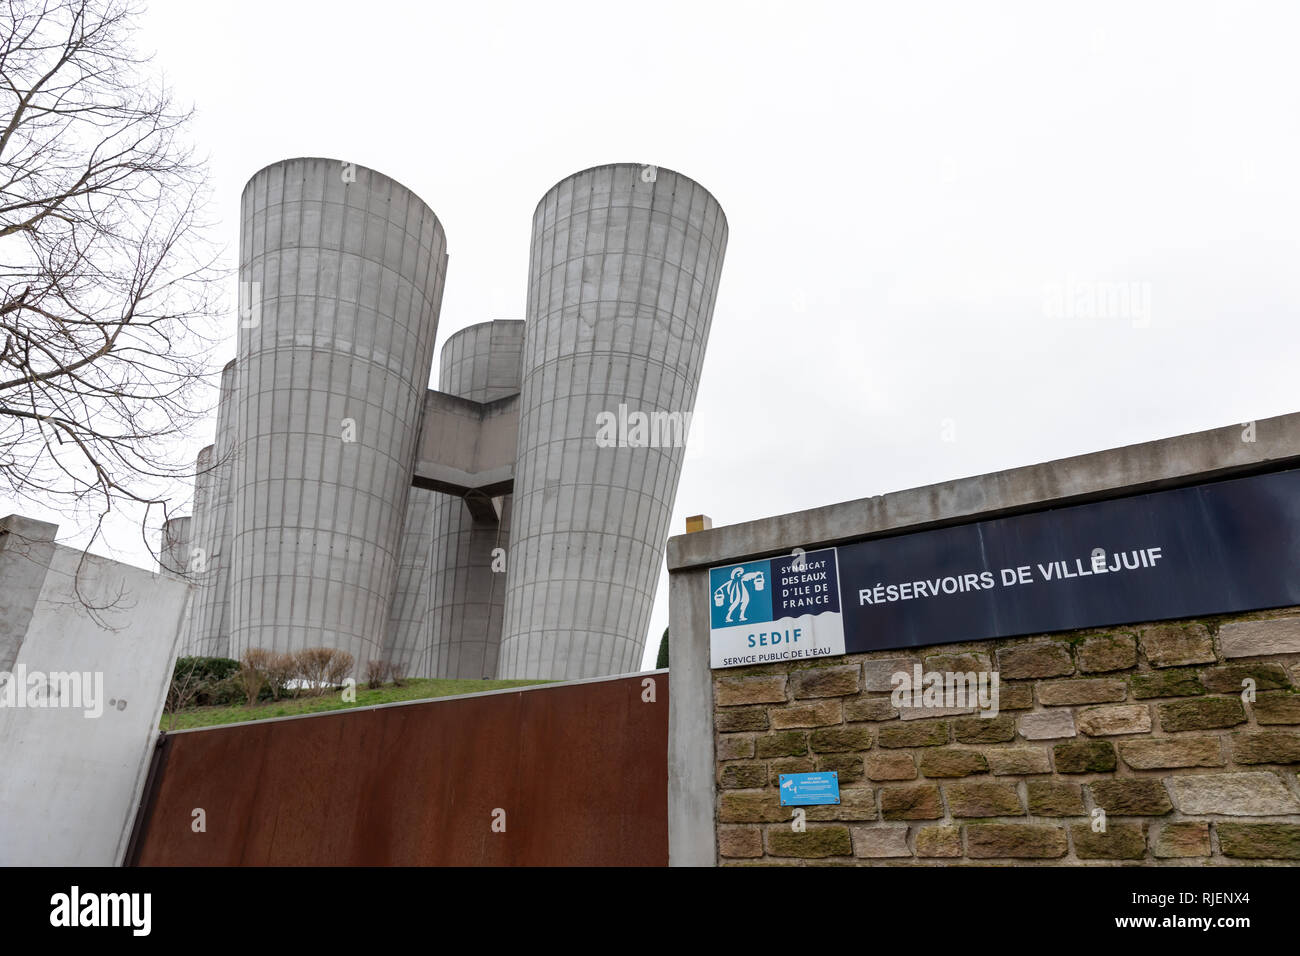 Réservoirs de Villejuif, Syndicat des eaux d'Île-de-France (SEDIF); concrete water reservoirs finished in 2015; Villejuif (Val-de-Marne), France Stock Photo